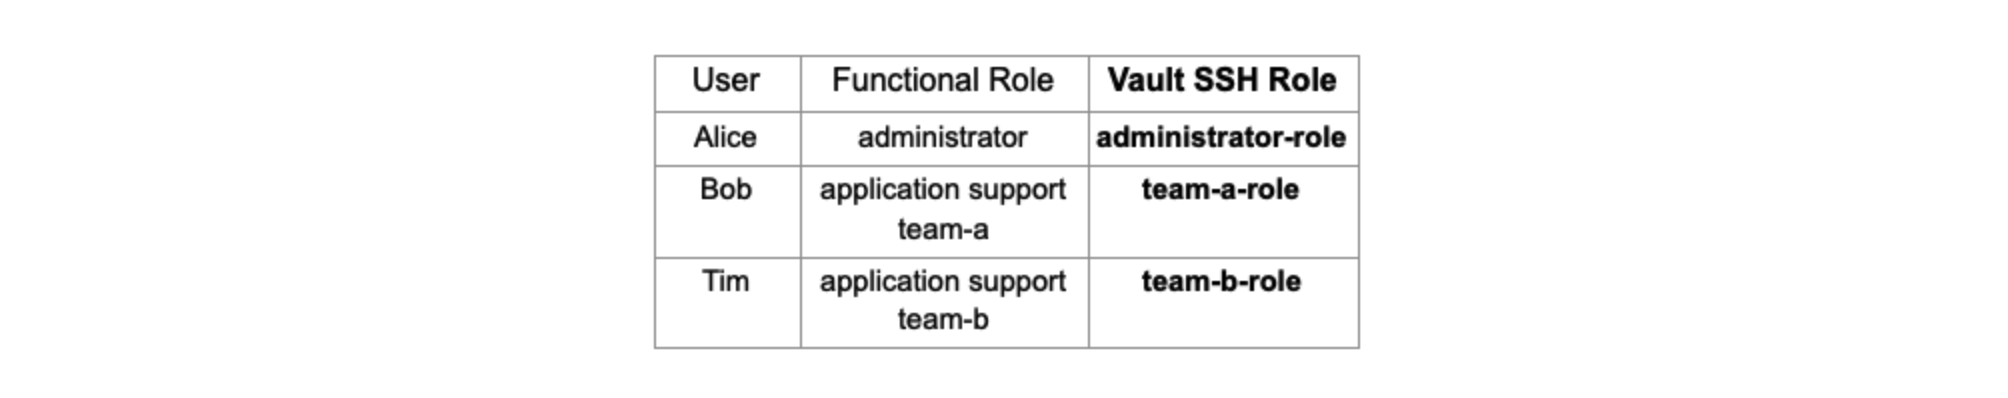 Vault SSH role